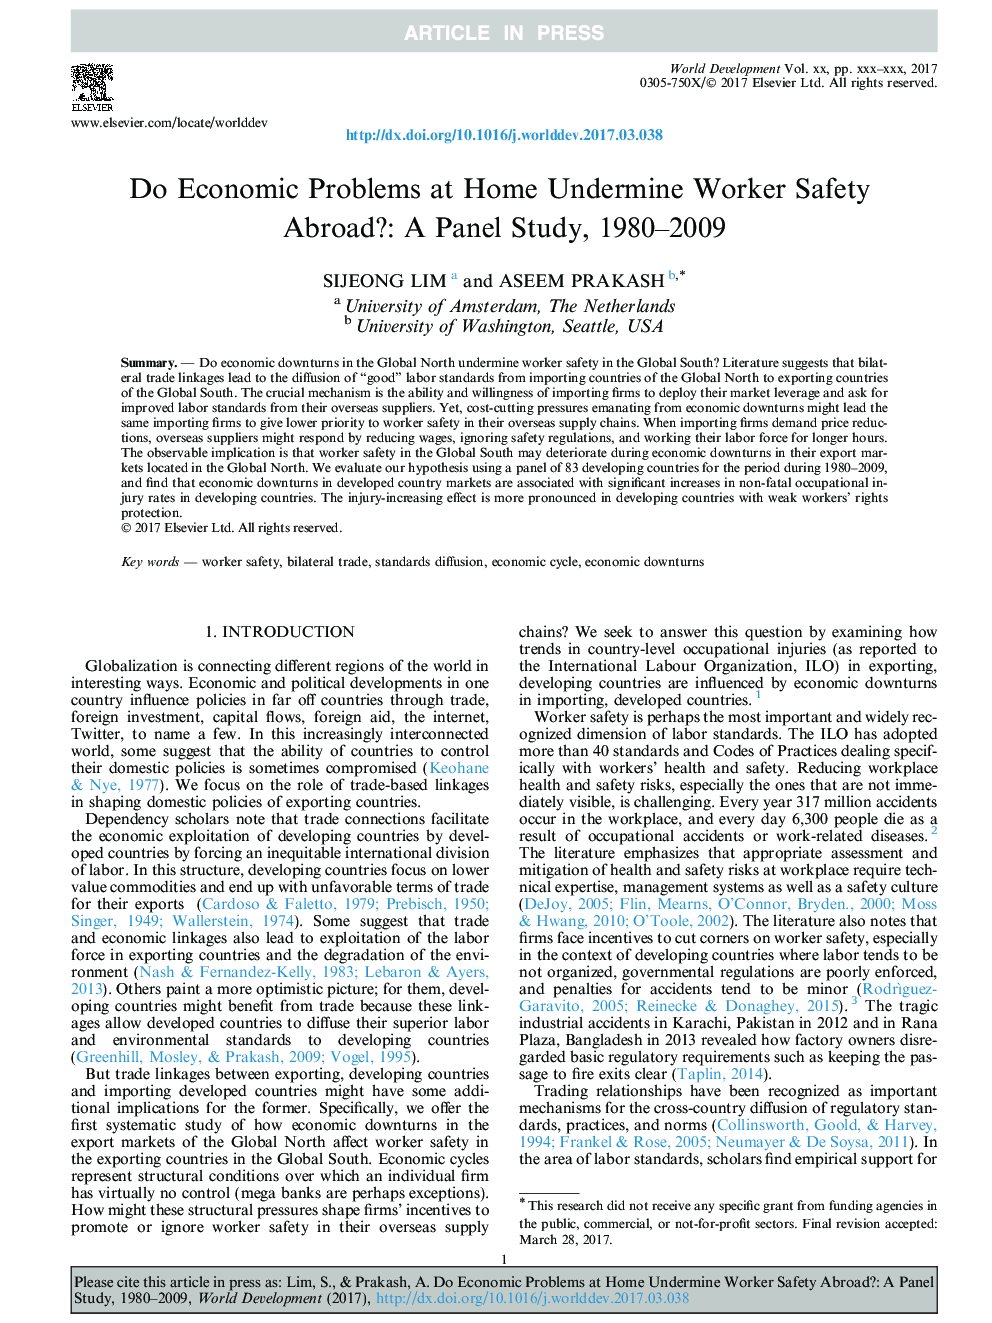 آیا مشکلات اقتصادی در خانه آسیب می بینند ایمنی کارگران در خارج از کشور: یک مطالعه پانل، 1980-2009 